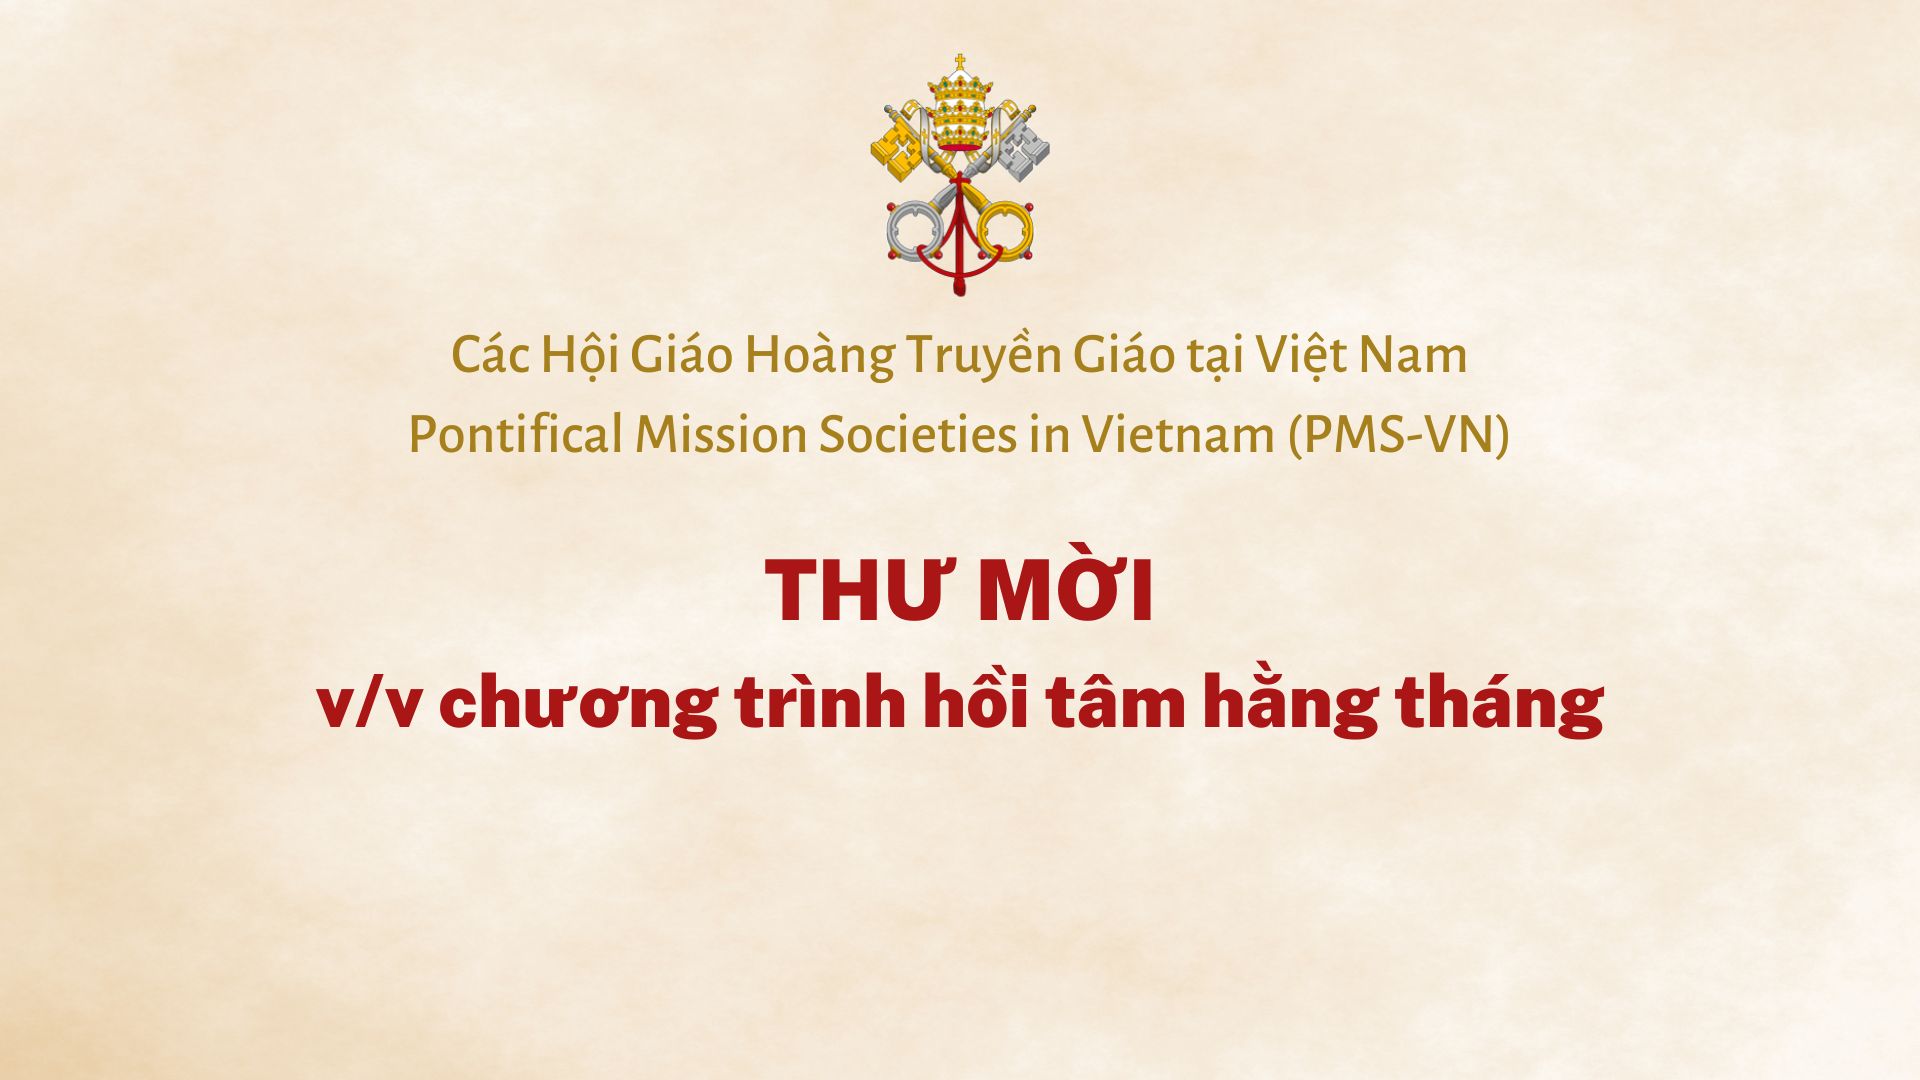 Các Hội Giáo Hoàng Truyền Giáo tại Việt Nam: Thư mời tham gia chương trình hồi tâm hằng tháng